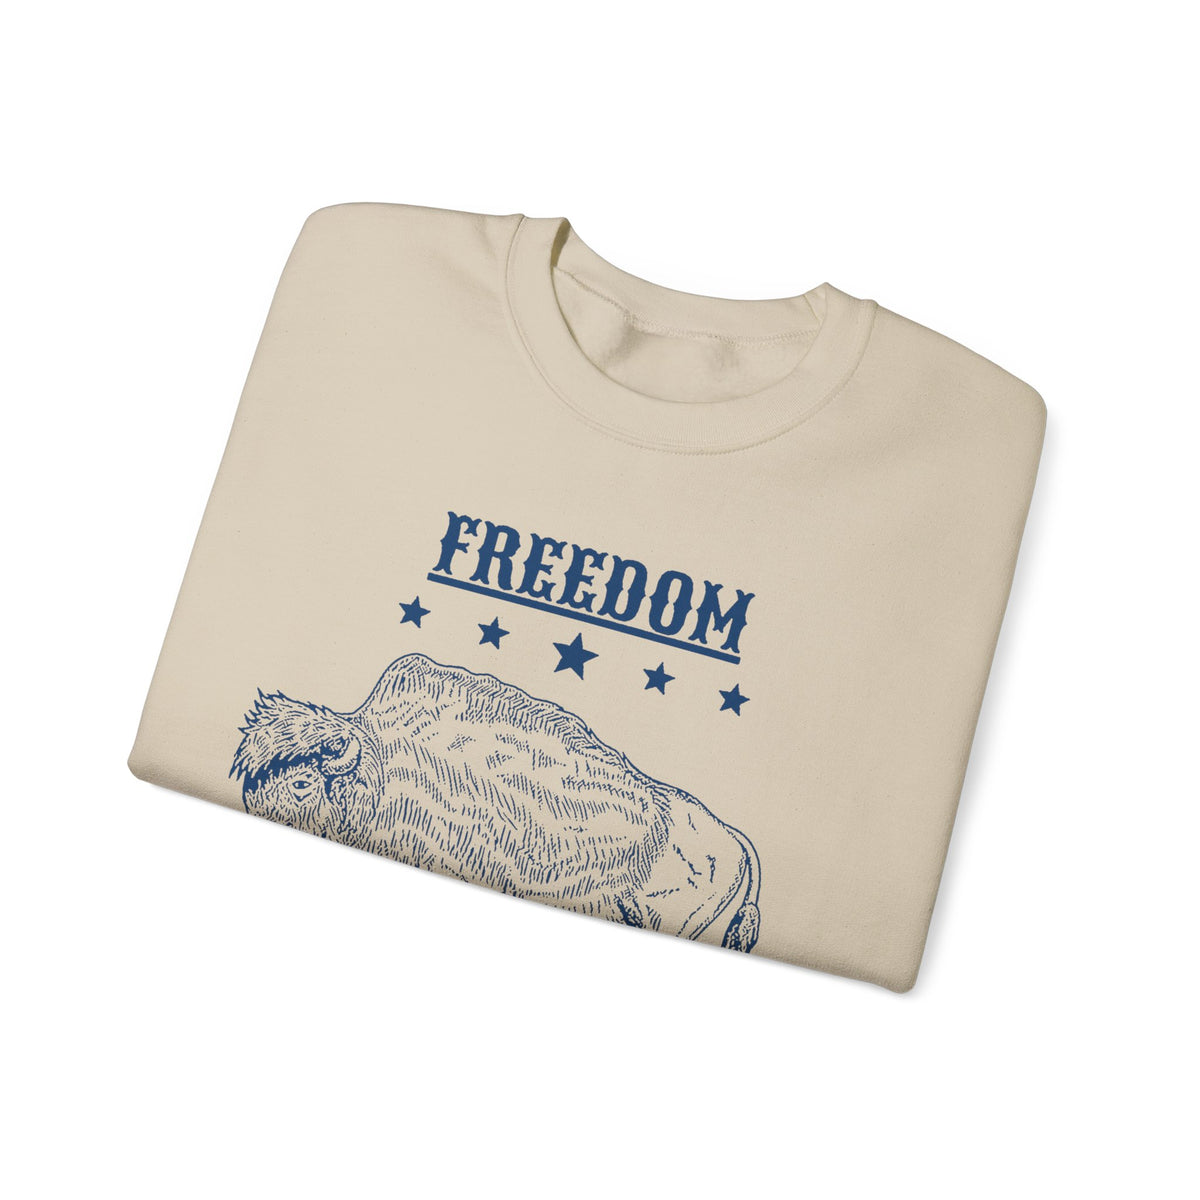 Freedom Homeschool Co-op Crewneck Sweatshirts